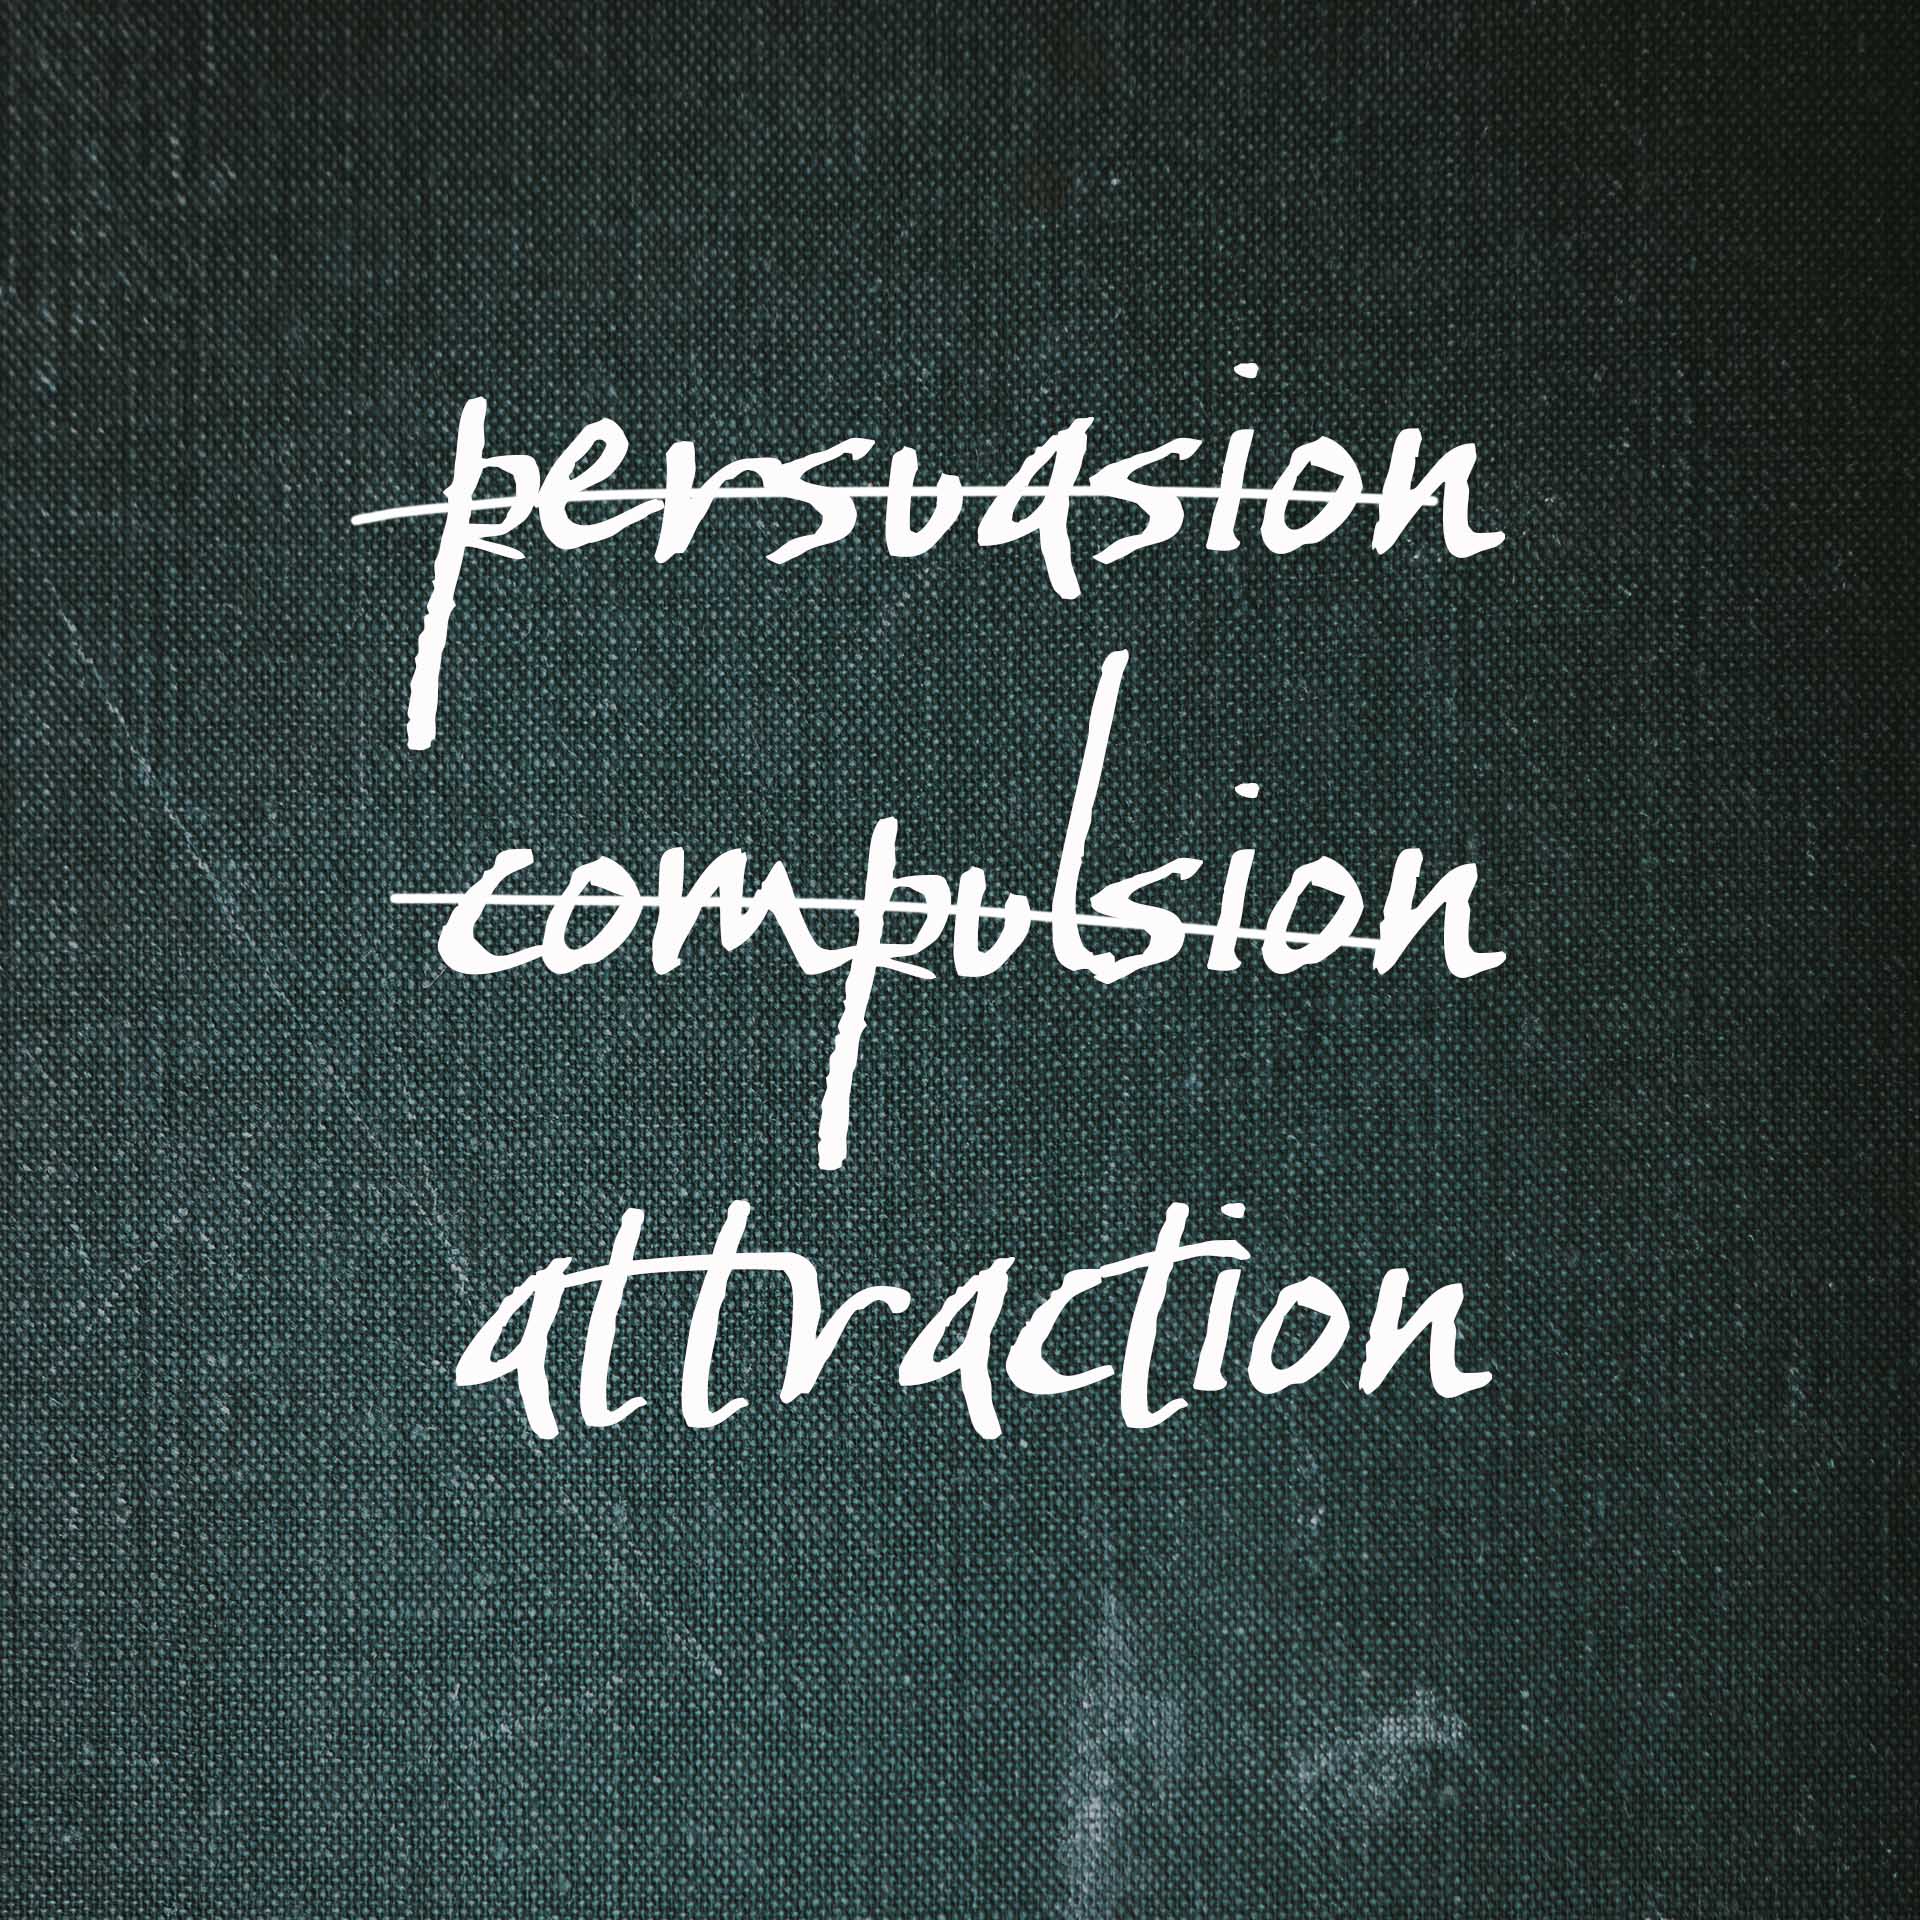 Persuasion vs compulsion vs attraction